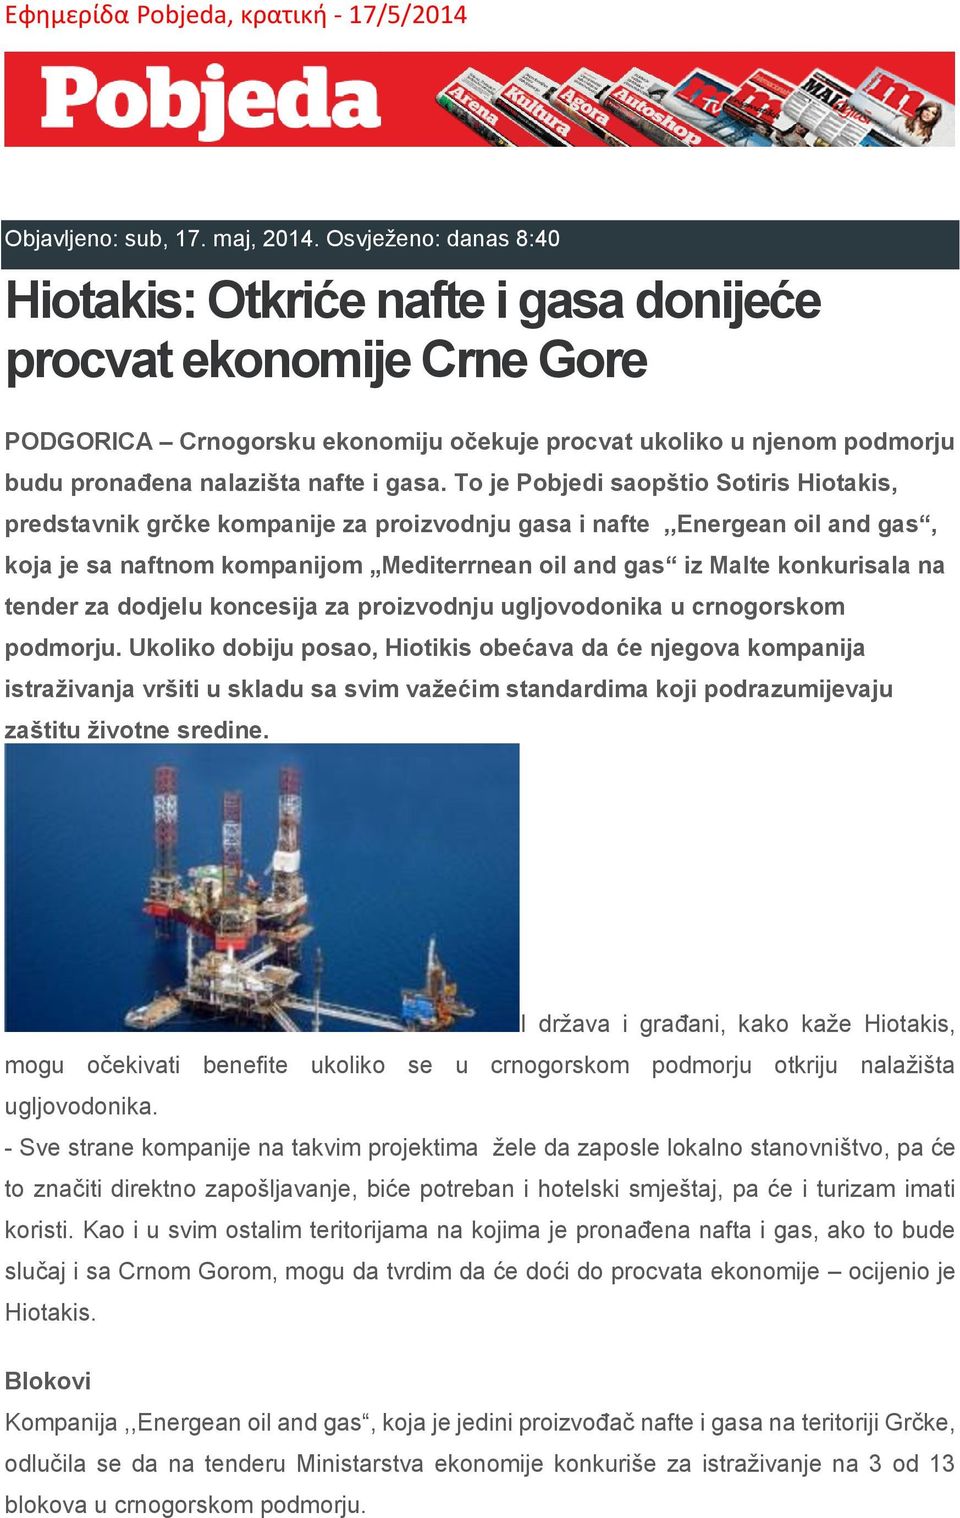 gasa. To je Pobjedi saopštio Sotiris Hiotakis, predstavnik grčke kompanije za proizvodnju gasa i nafte,,energean oil and gas, koja je sa naftnom kompanijom Mediterrnean oil and gas iz Malte